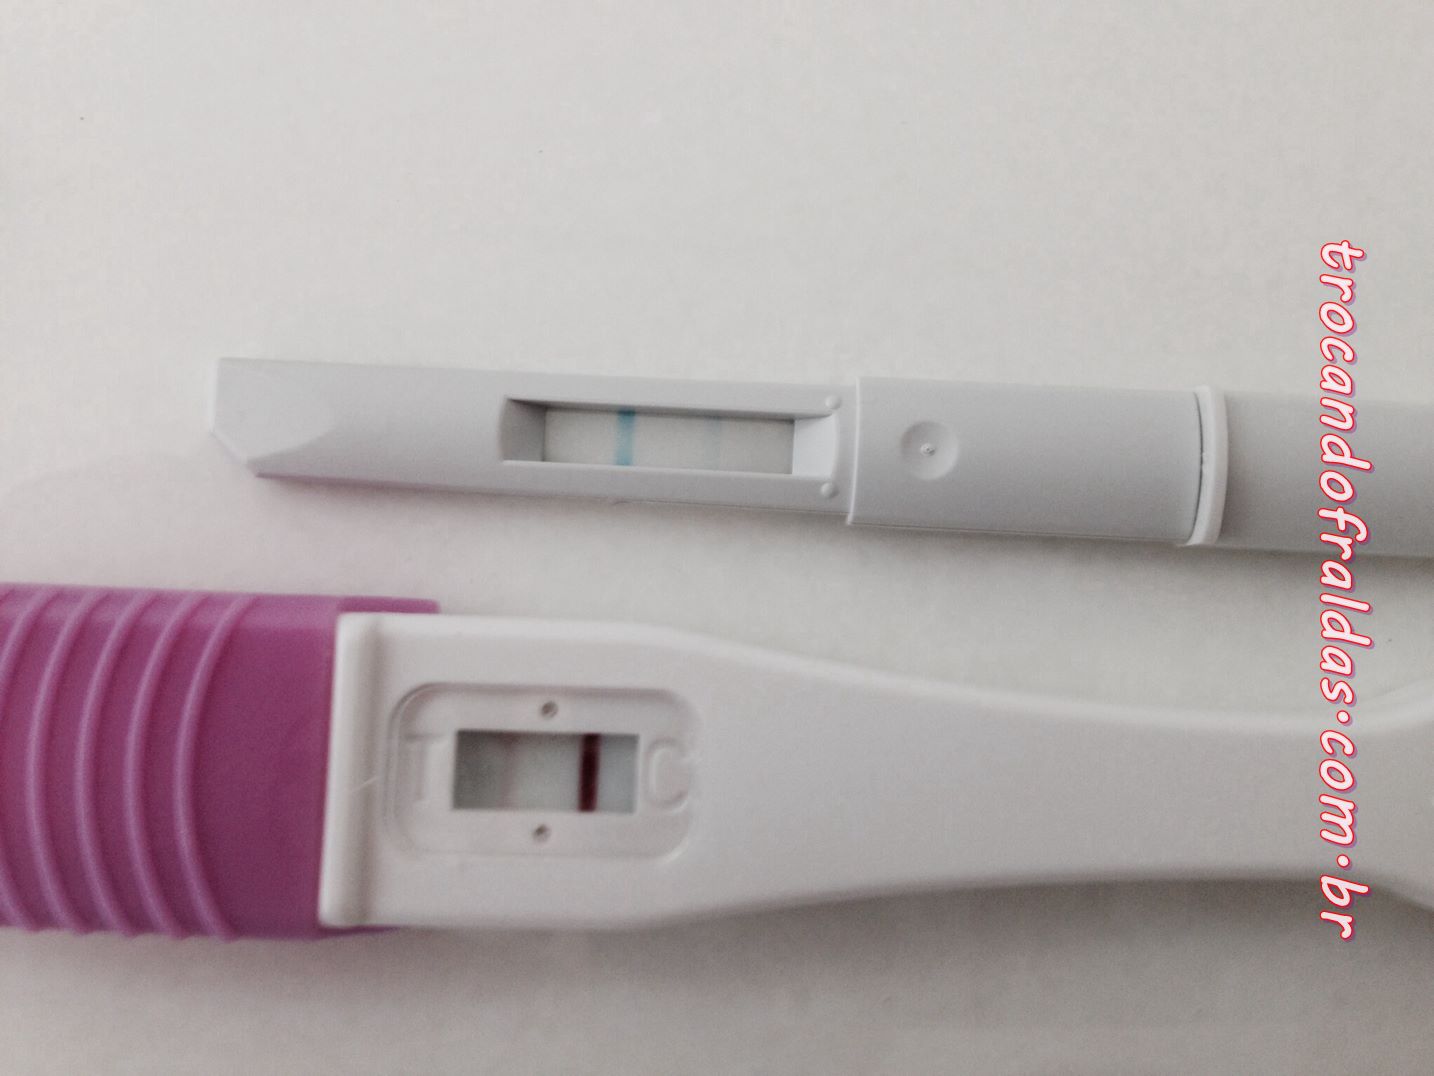 Comparación de la sensibilidad de los test de embarazo